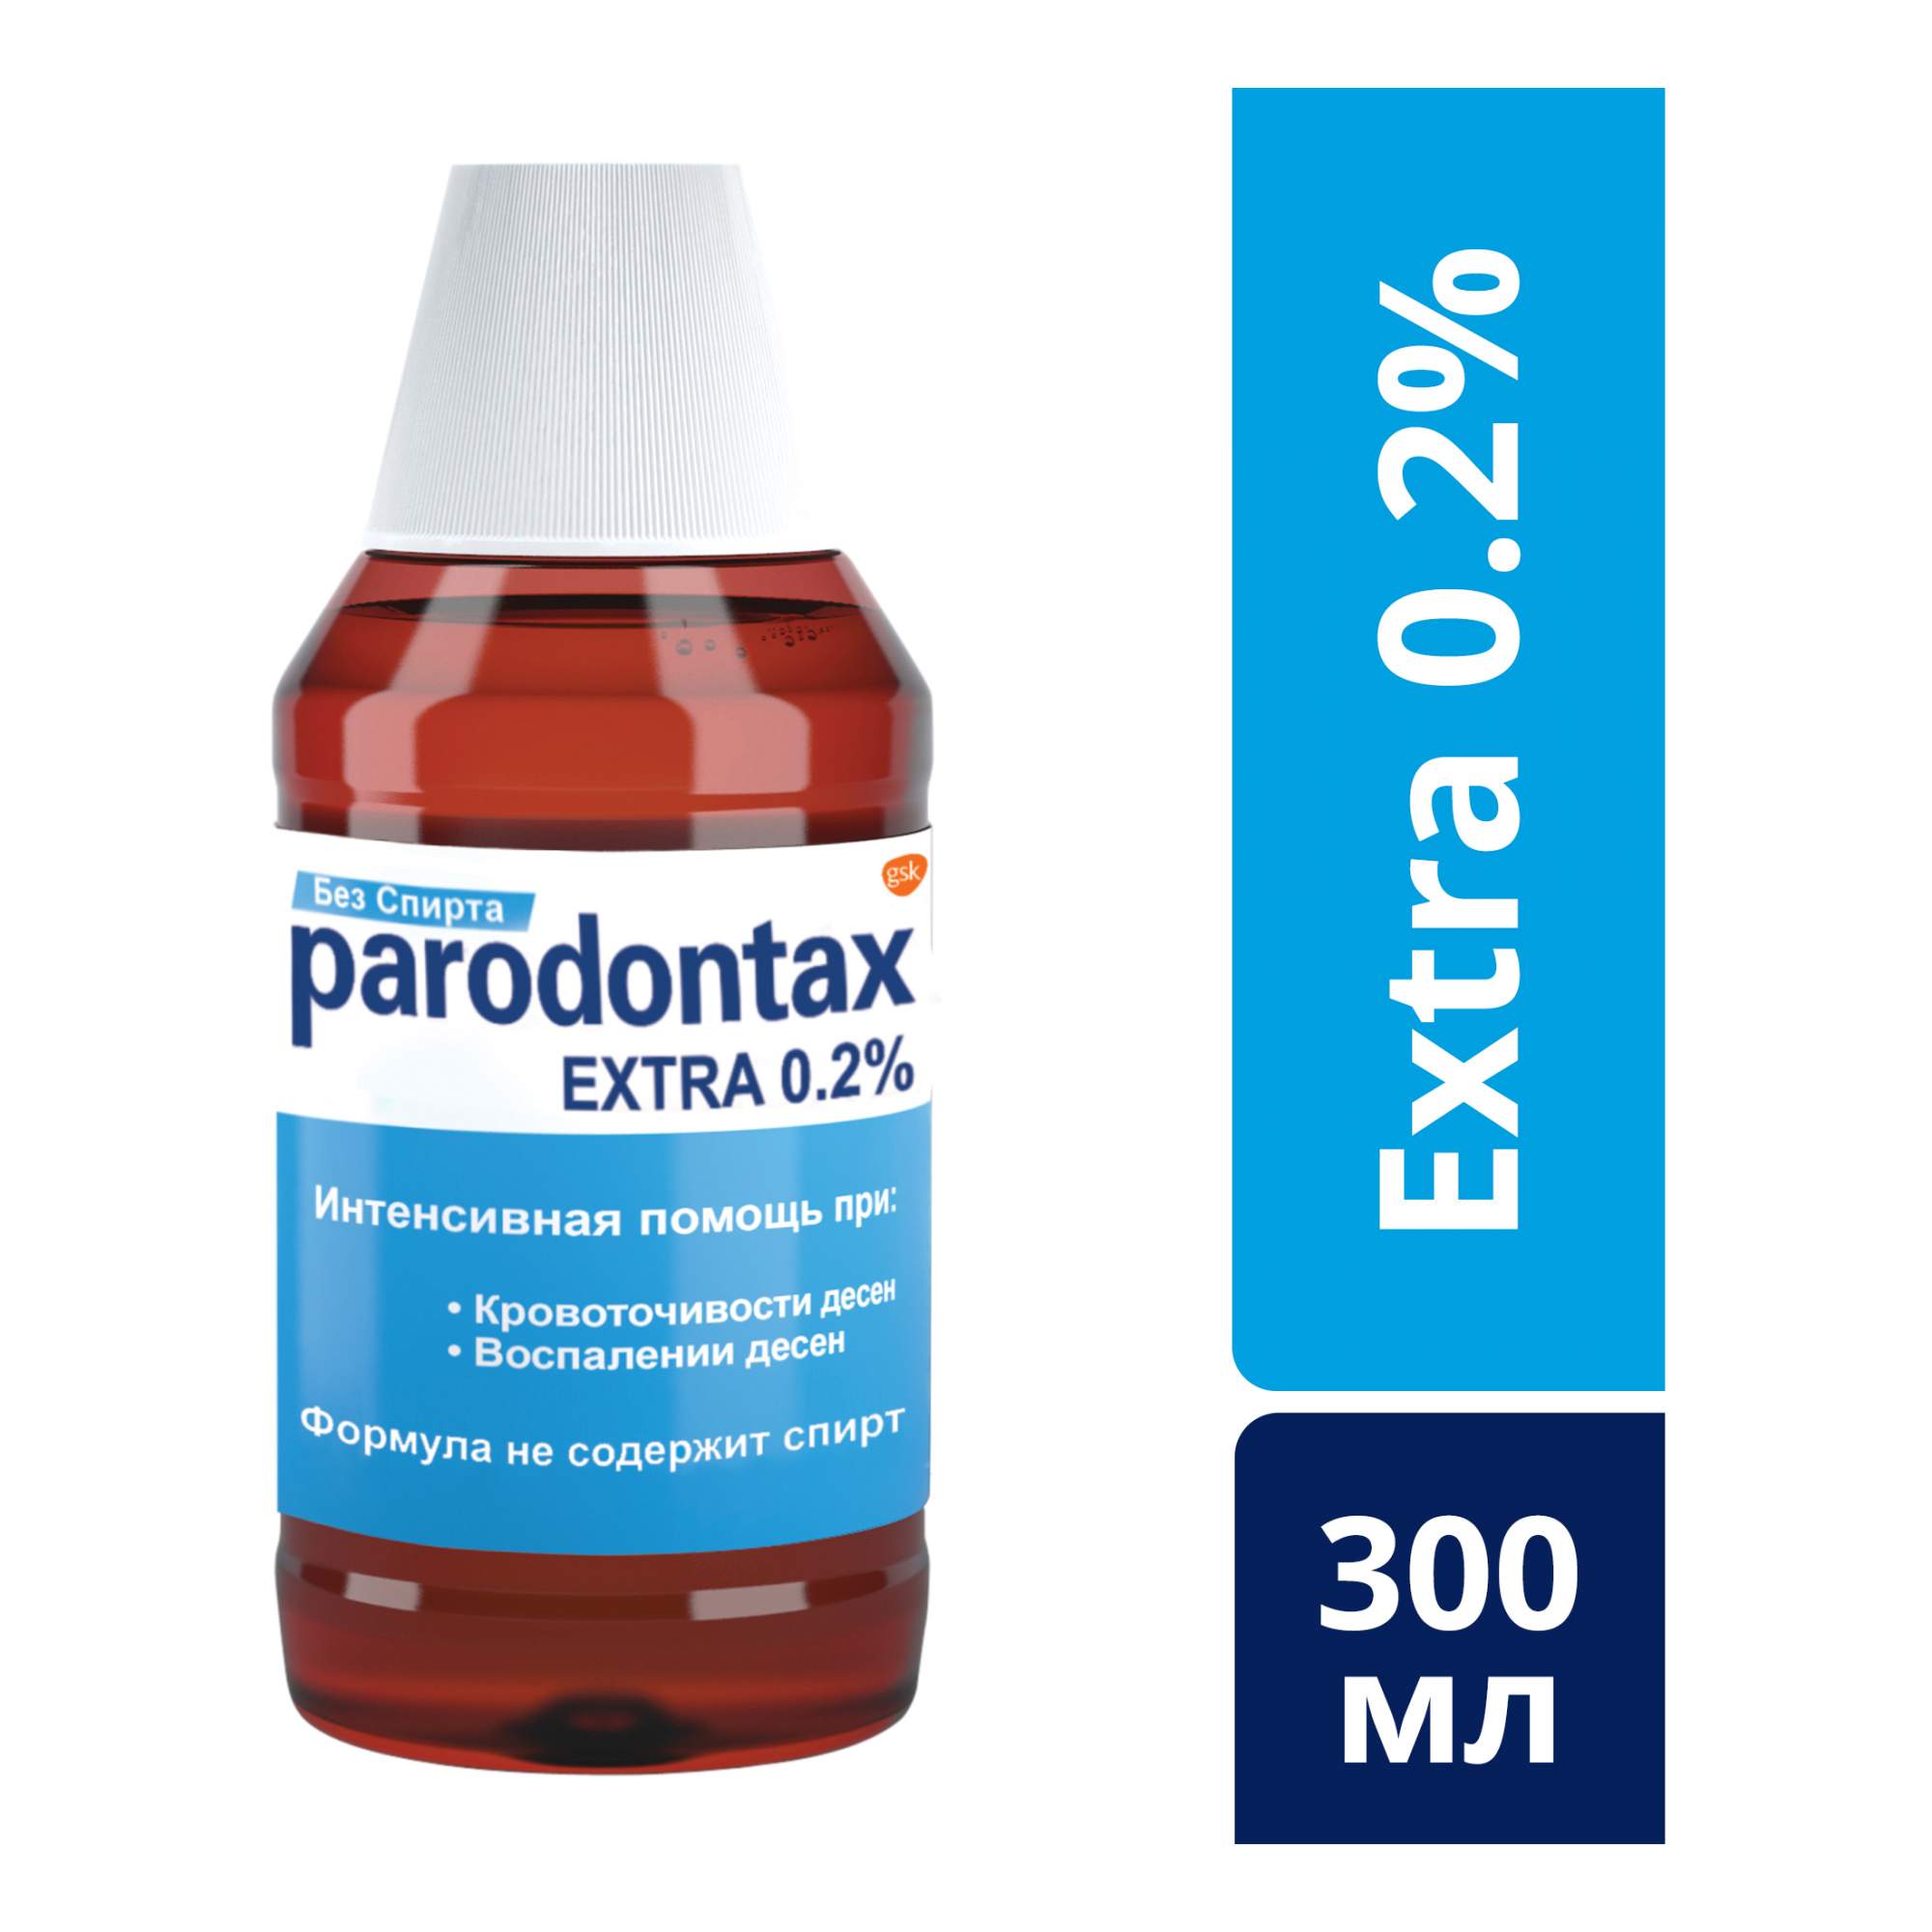 Ополаскиватель для полости ртаParodontax Экстра, 0,2%, без спирта, 300 мл